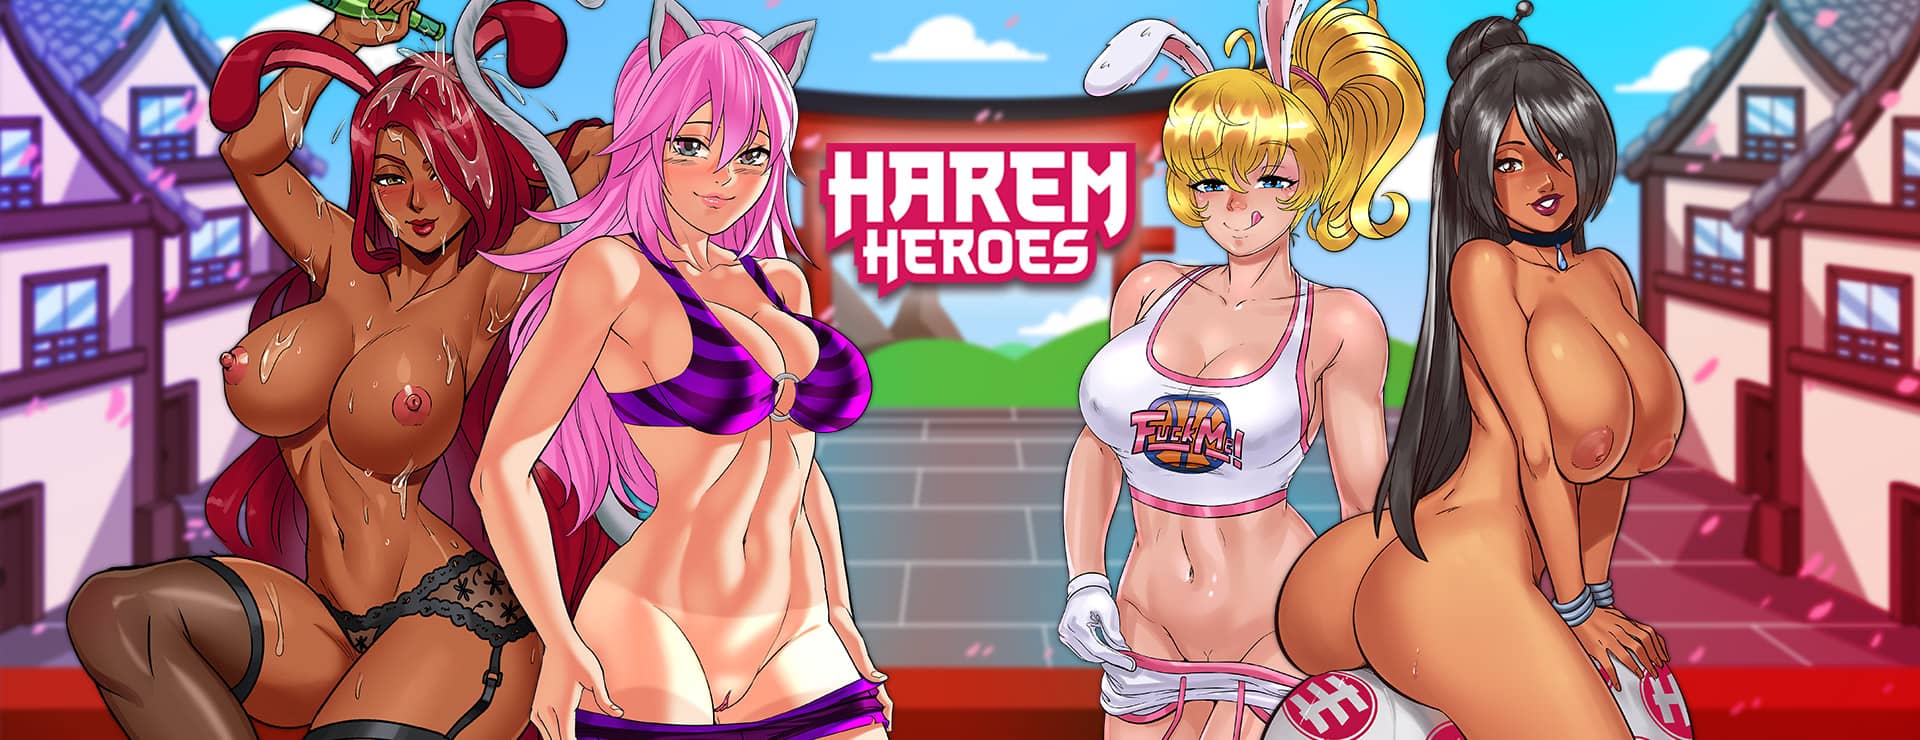 Harem Heroes - Aventura Acción Juego